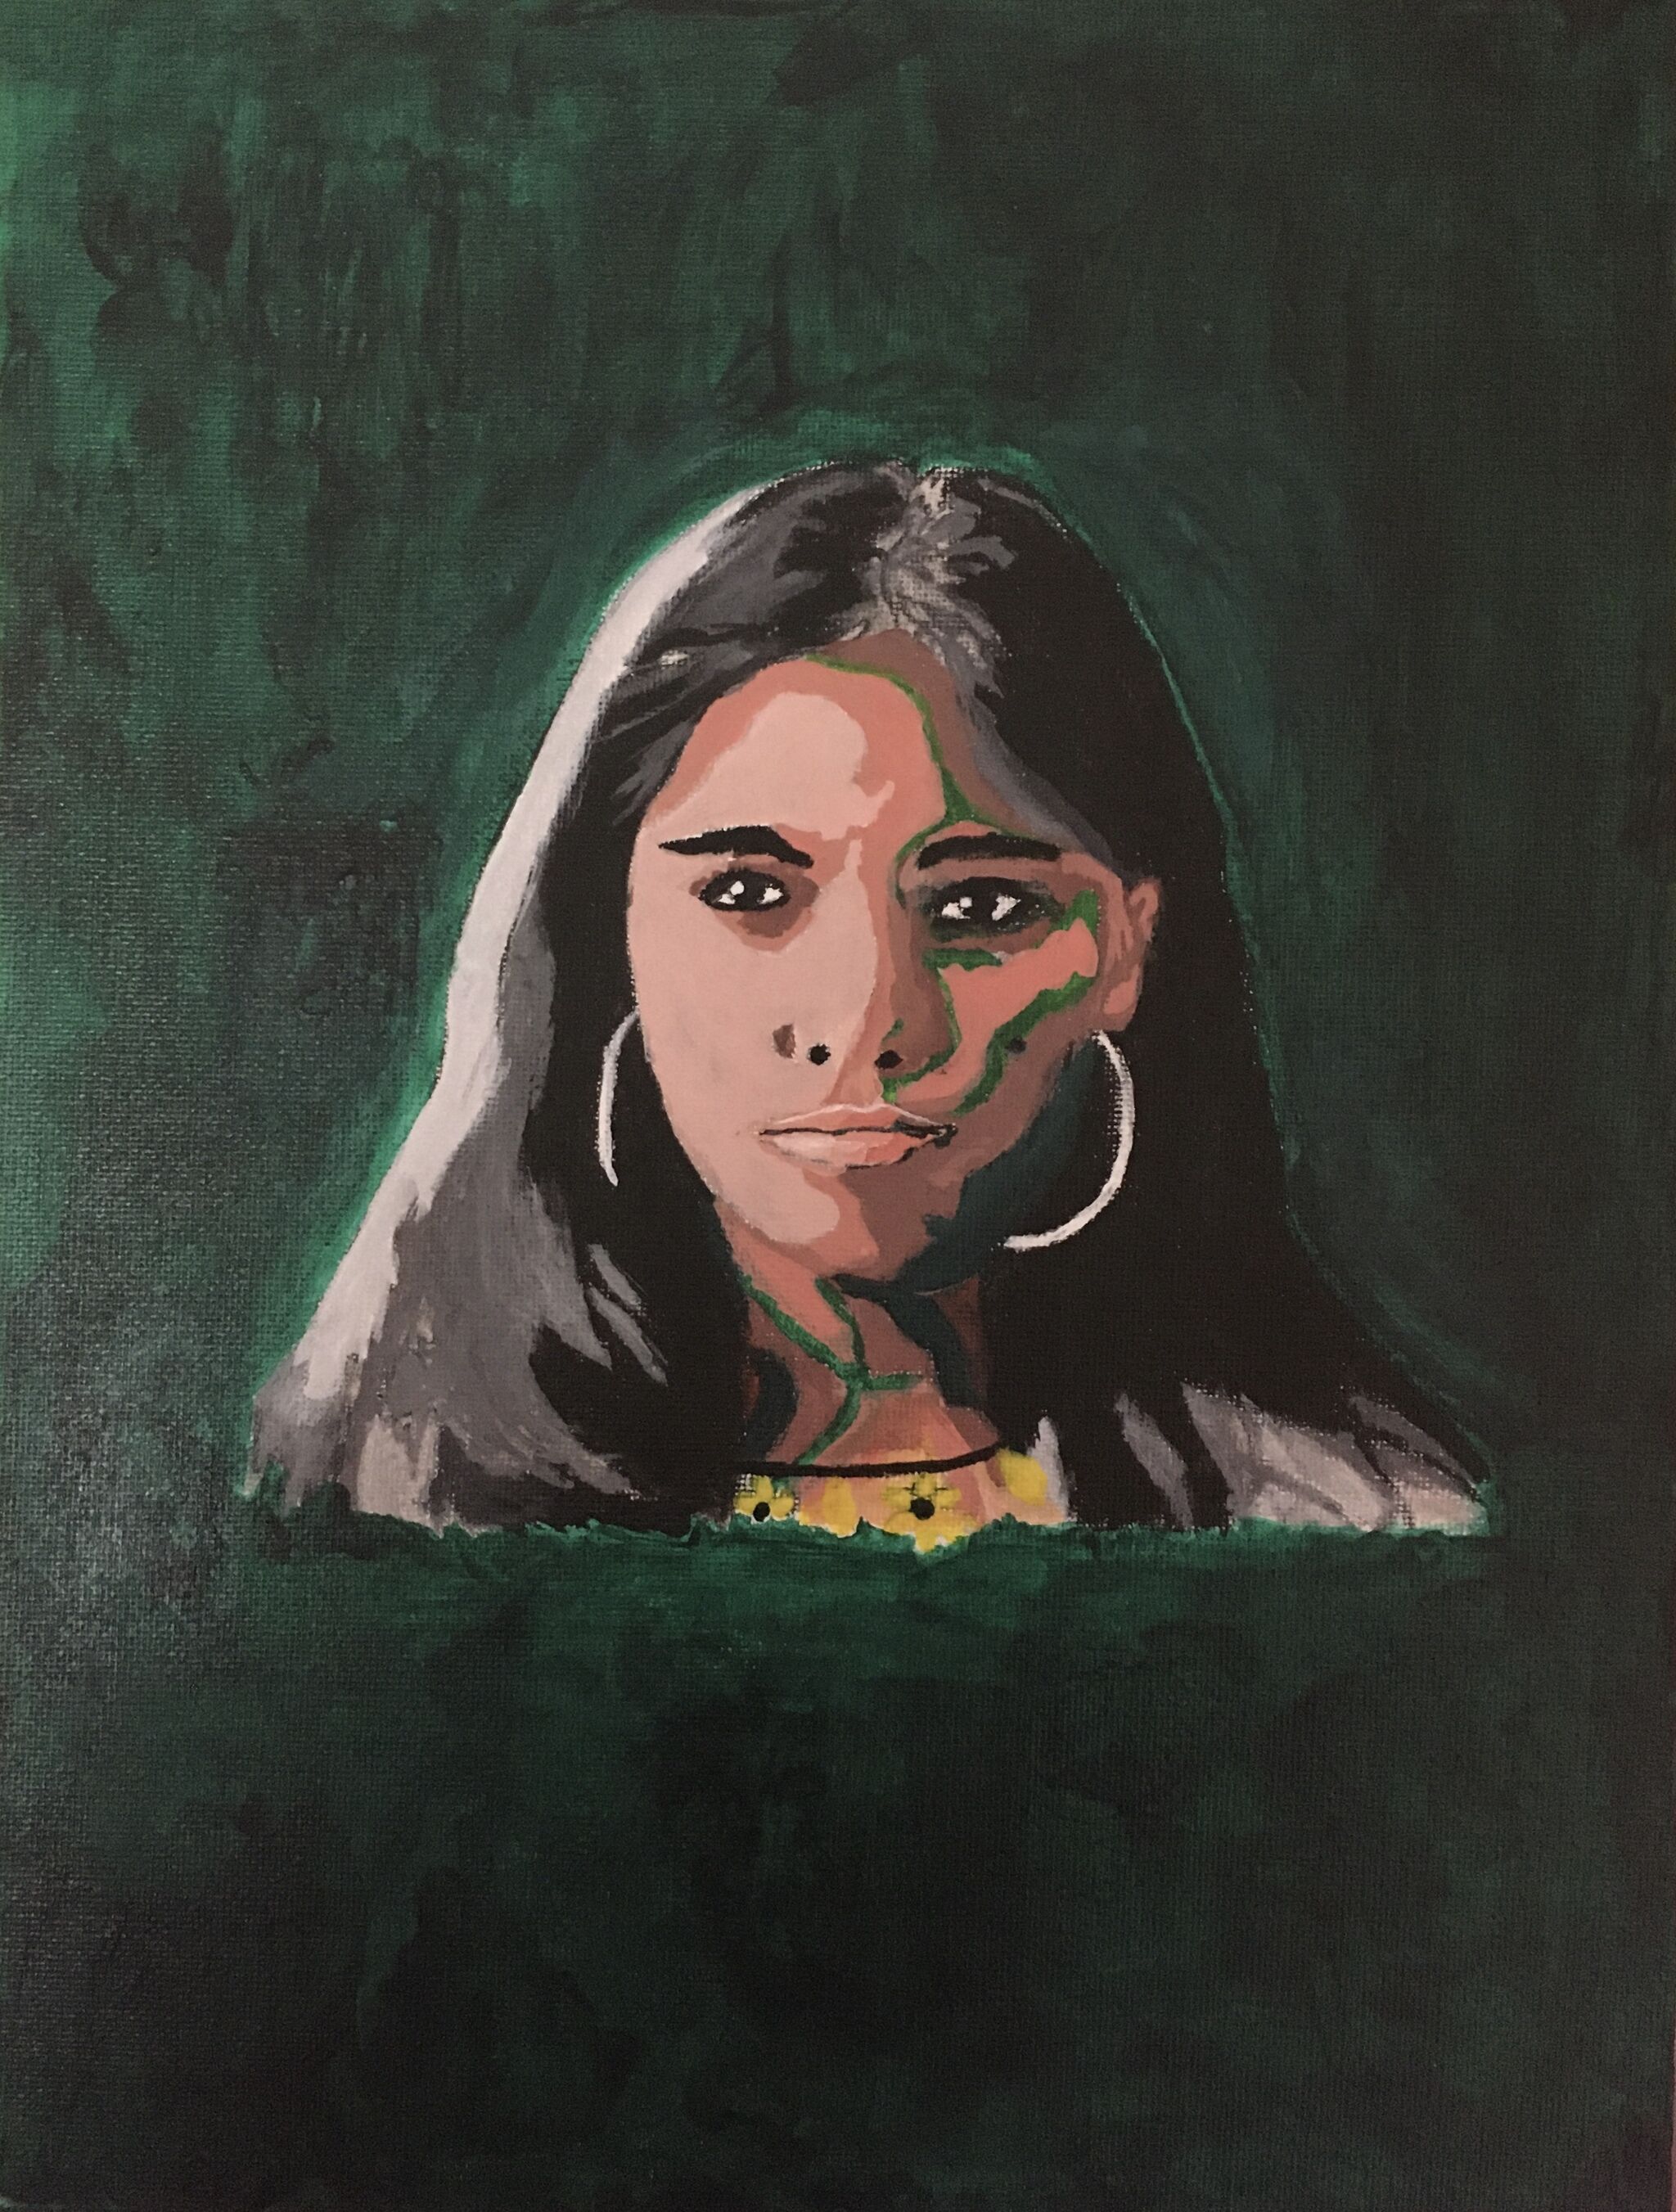 A portrait of Xiye Bastida against a dark green background.